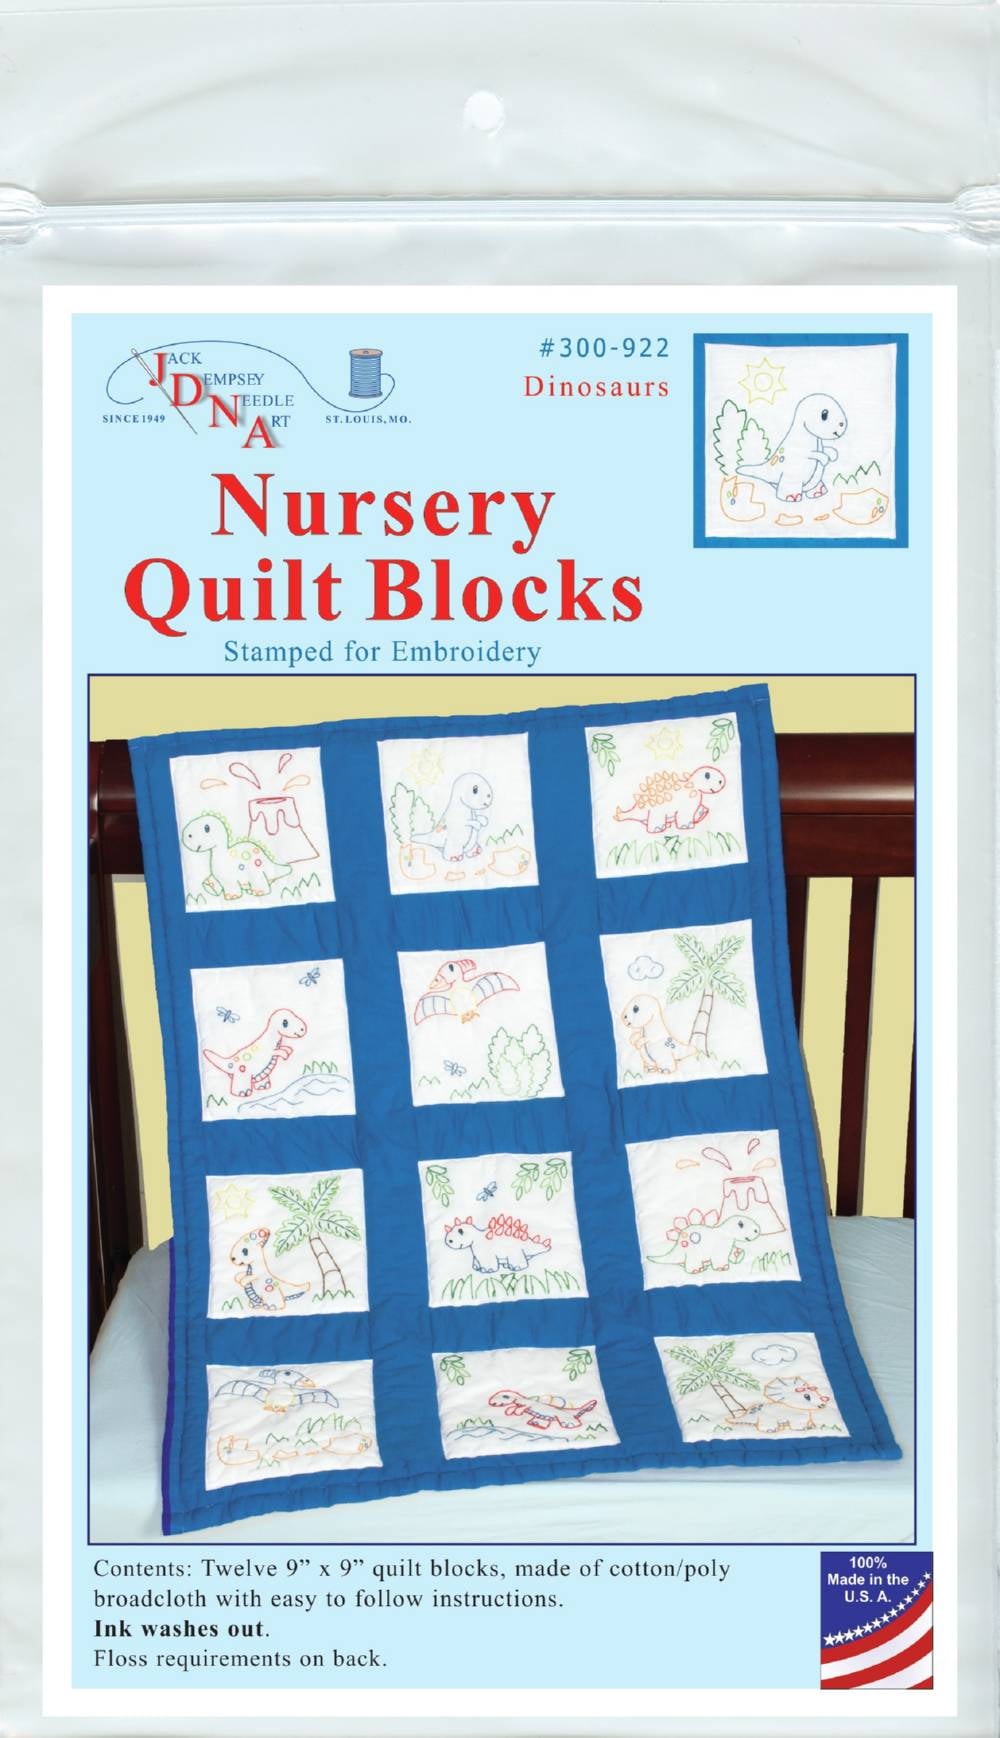 Jack Dempsey Stamped White Nursery Quilt Blocks 9"X9" 12/pkg-Girls 